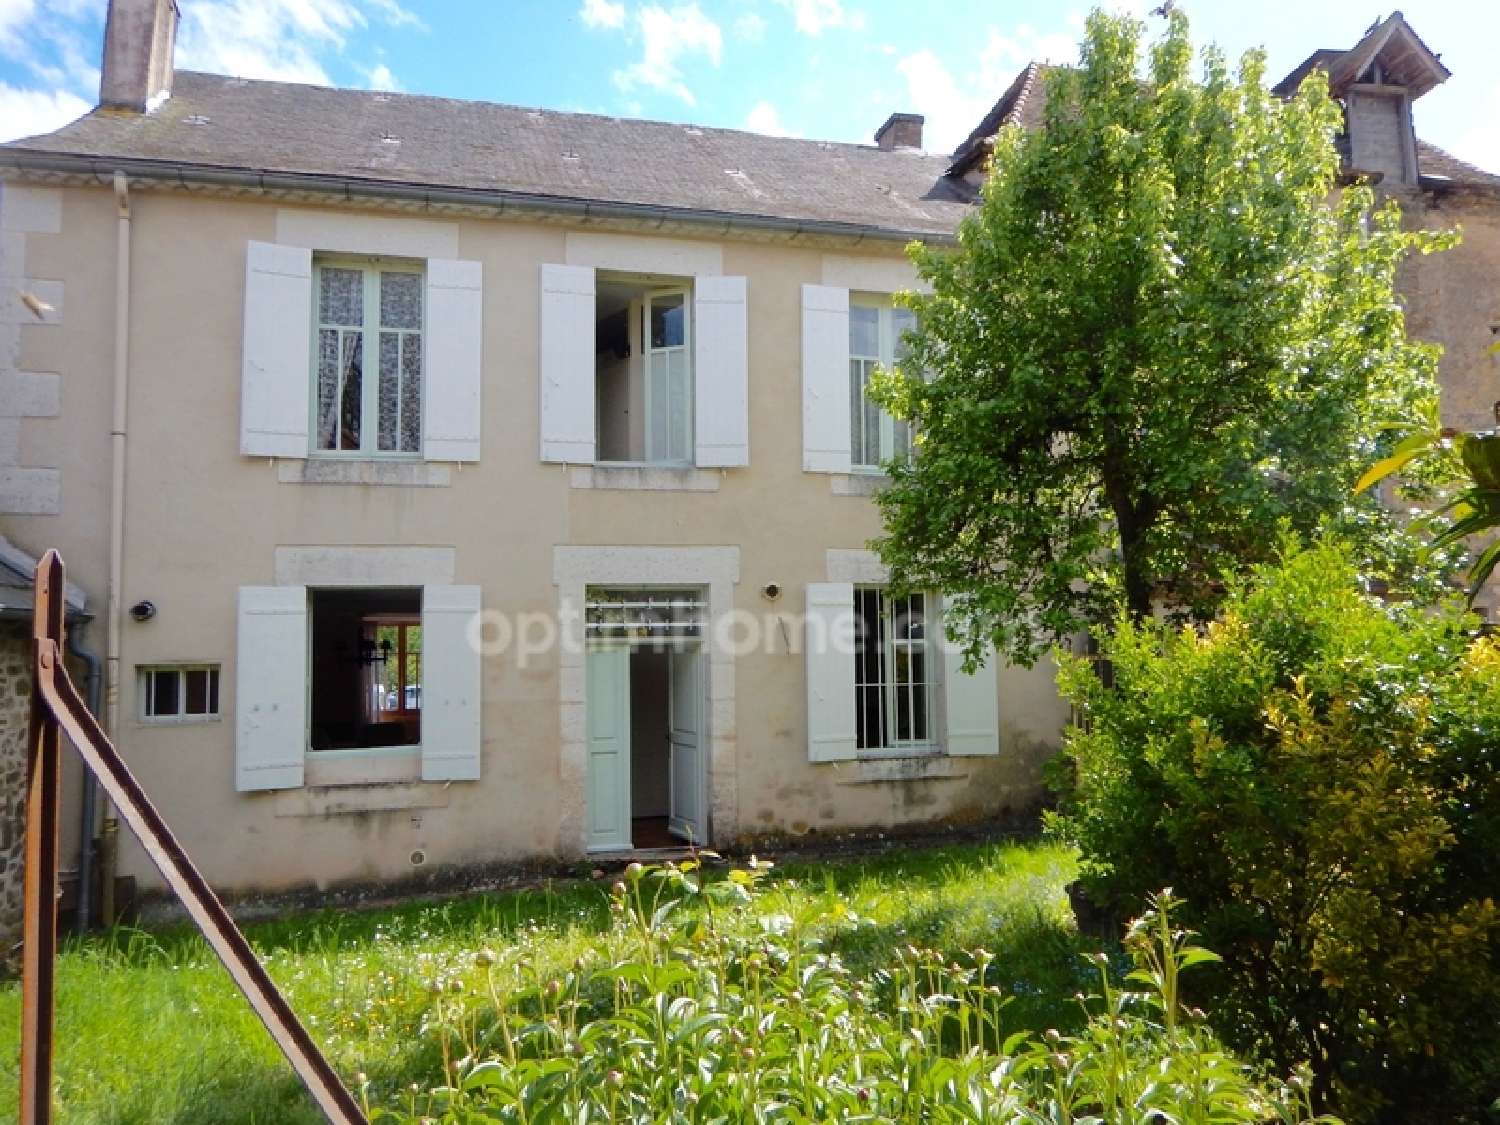  for sale village house Sarrazac Dordogne 1